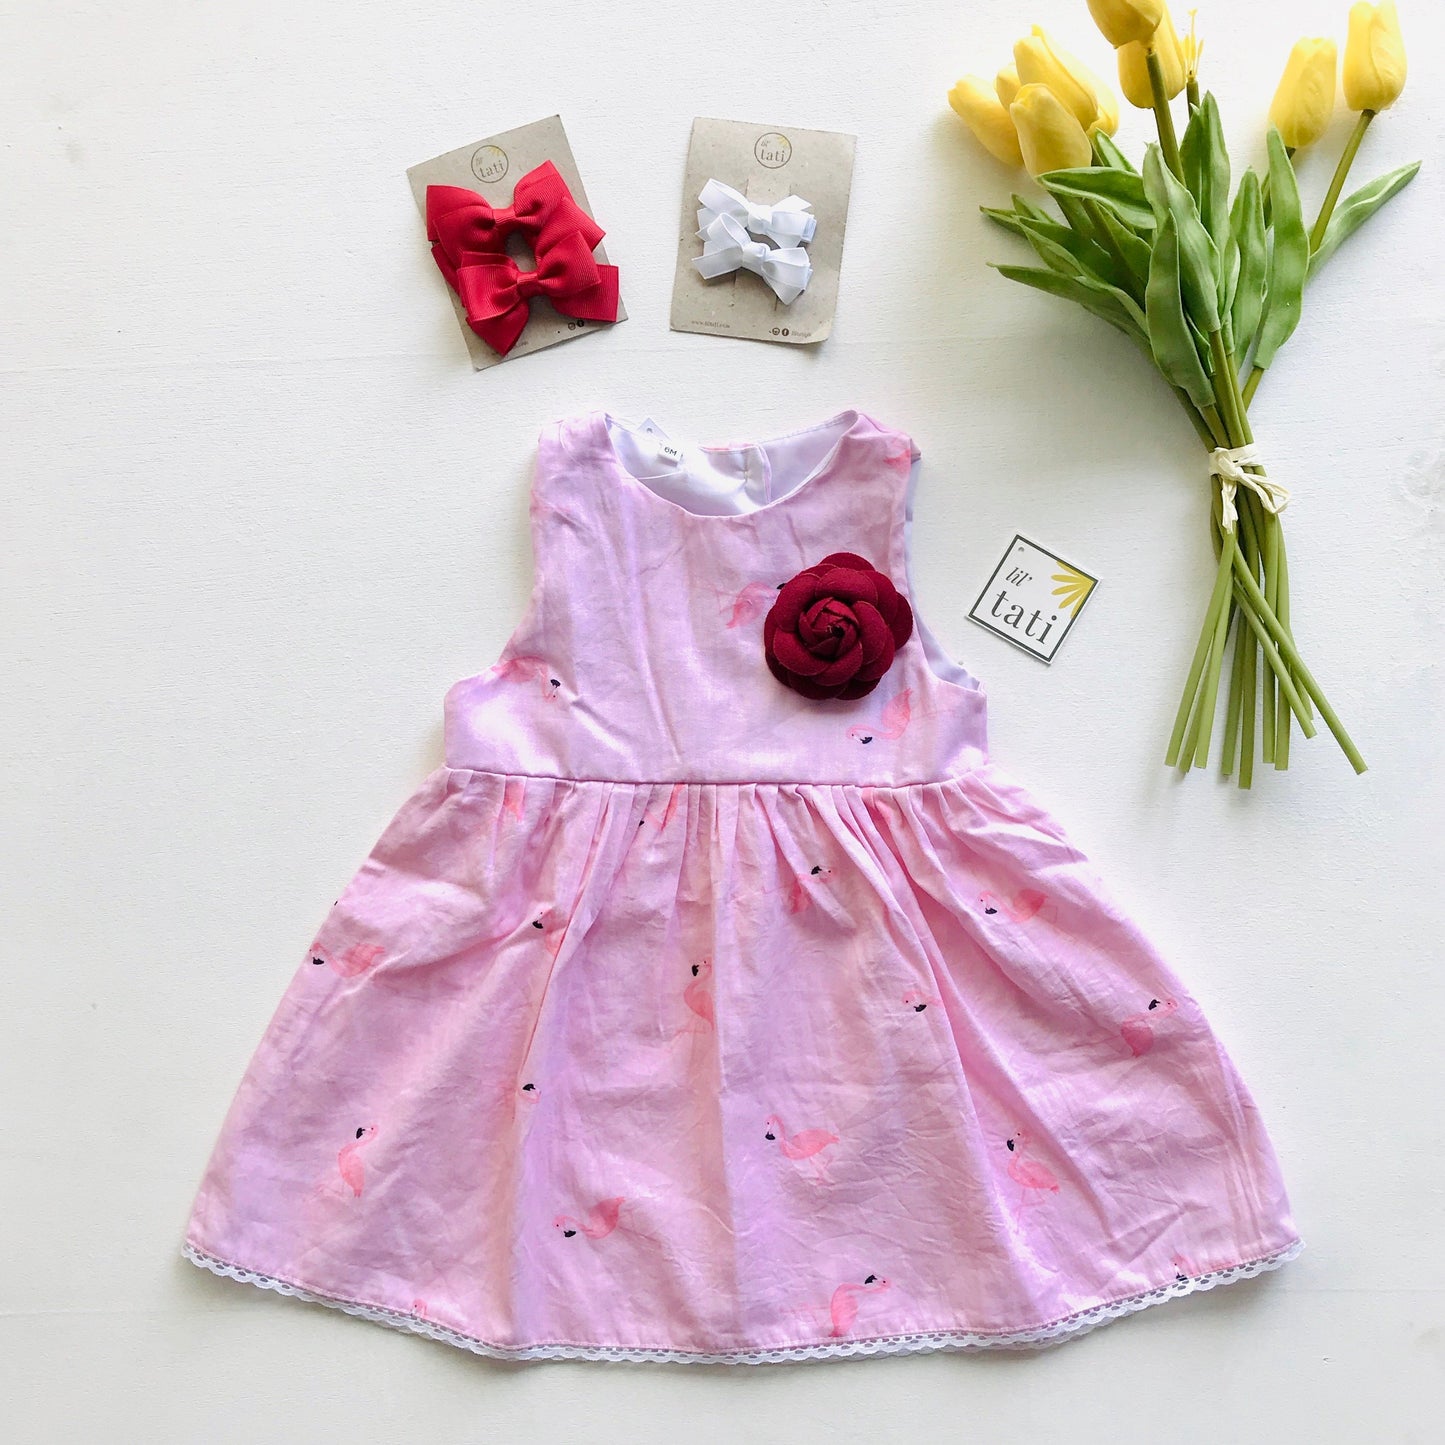 Iris Dress in Mini Flamingo Pink - Lil' Tati